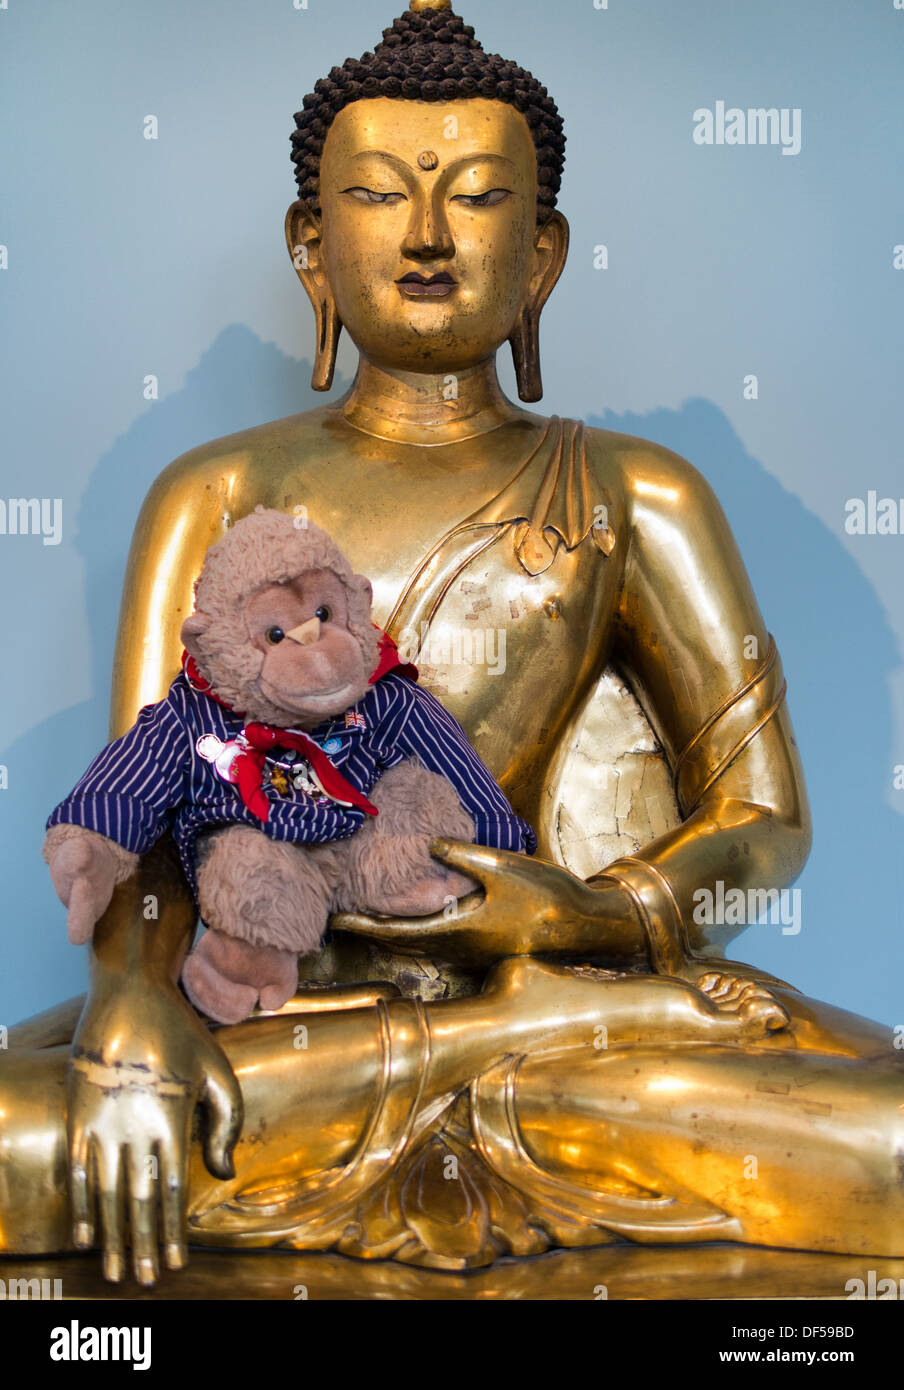 Das Victoria and Albert Museum, London - goldene tibetische Buddha mit überraschenden flauschige Spielkamerad Stockfoto